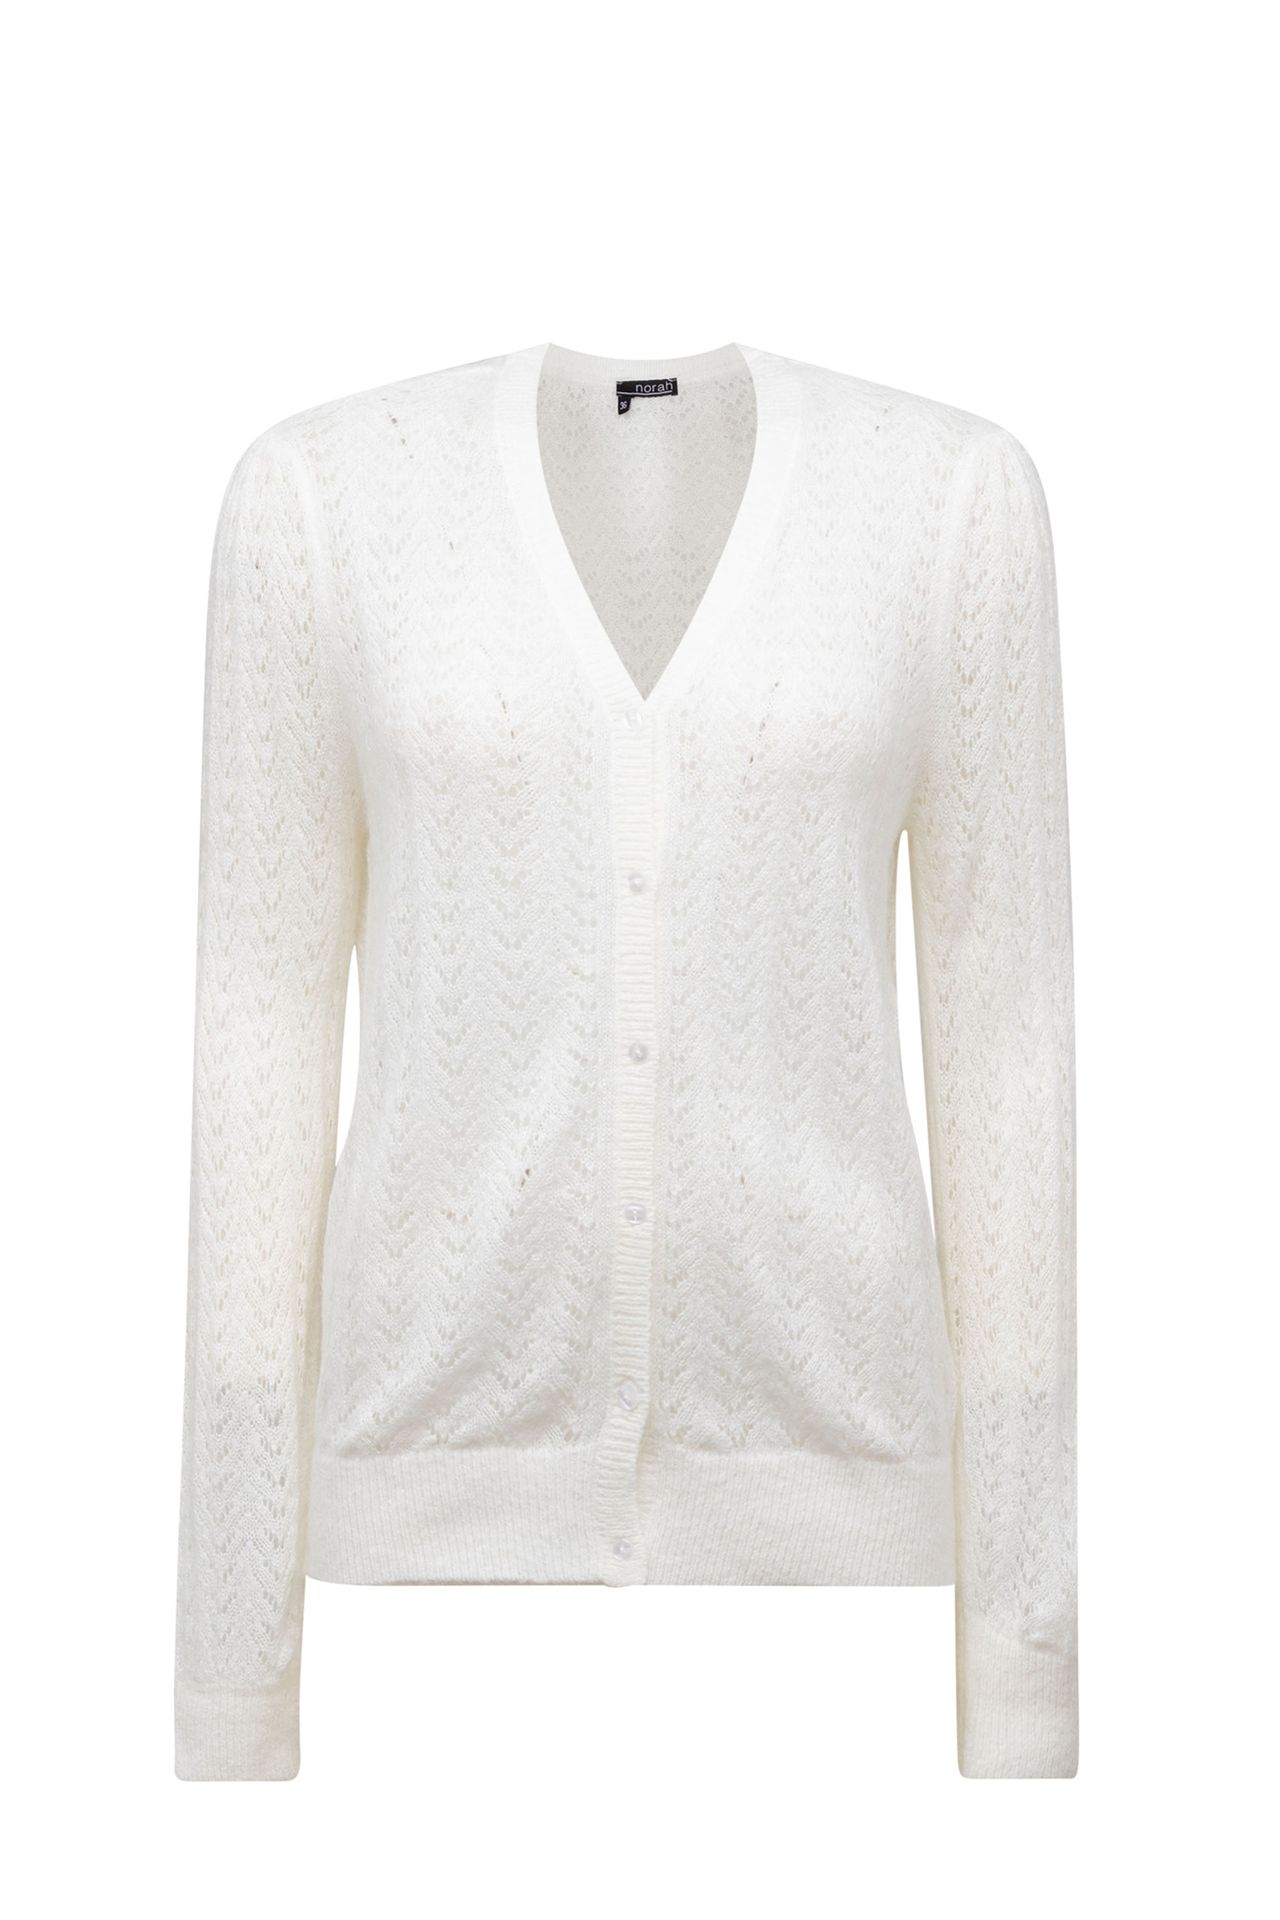 Norah Wit zacht vest met gebreid patroon off-white 213496-101